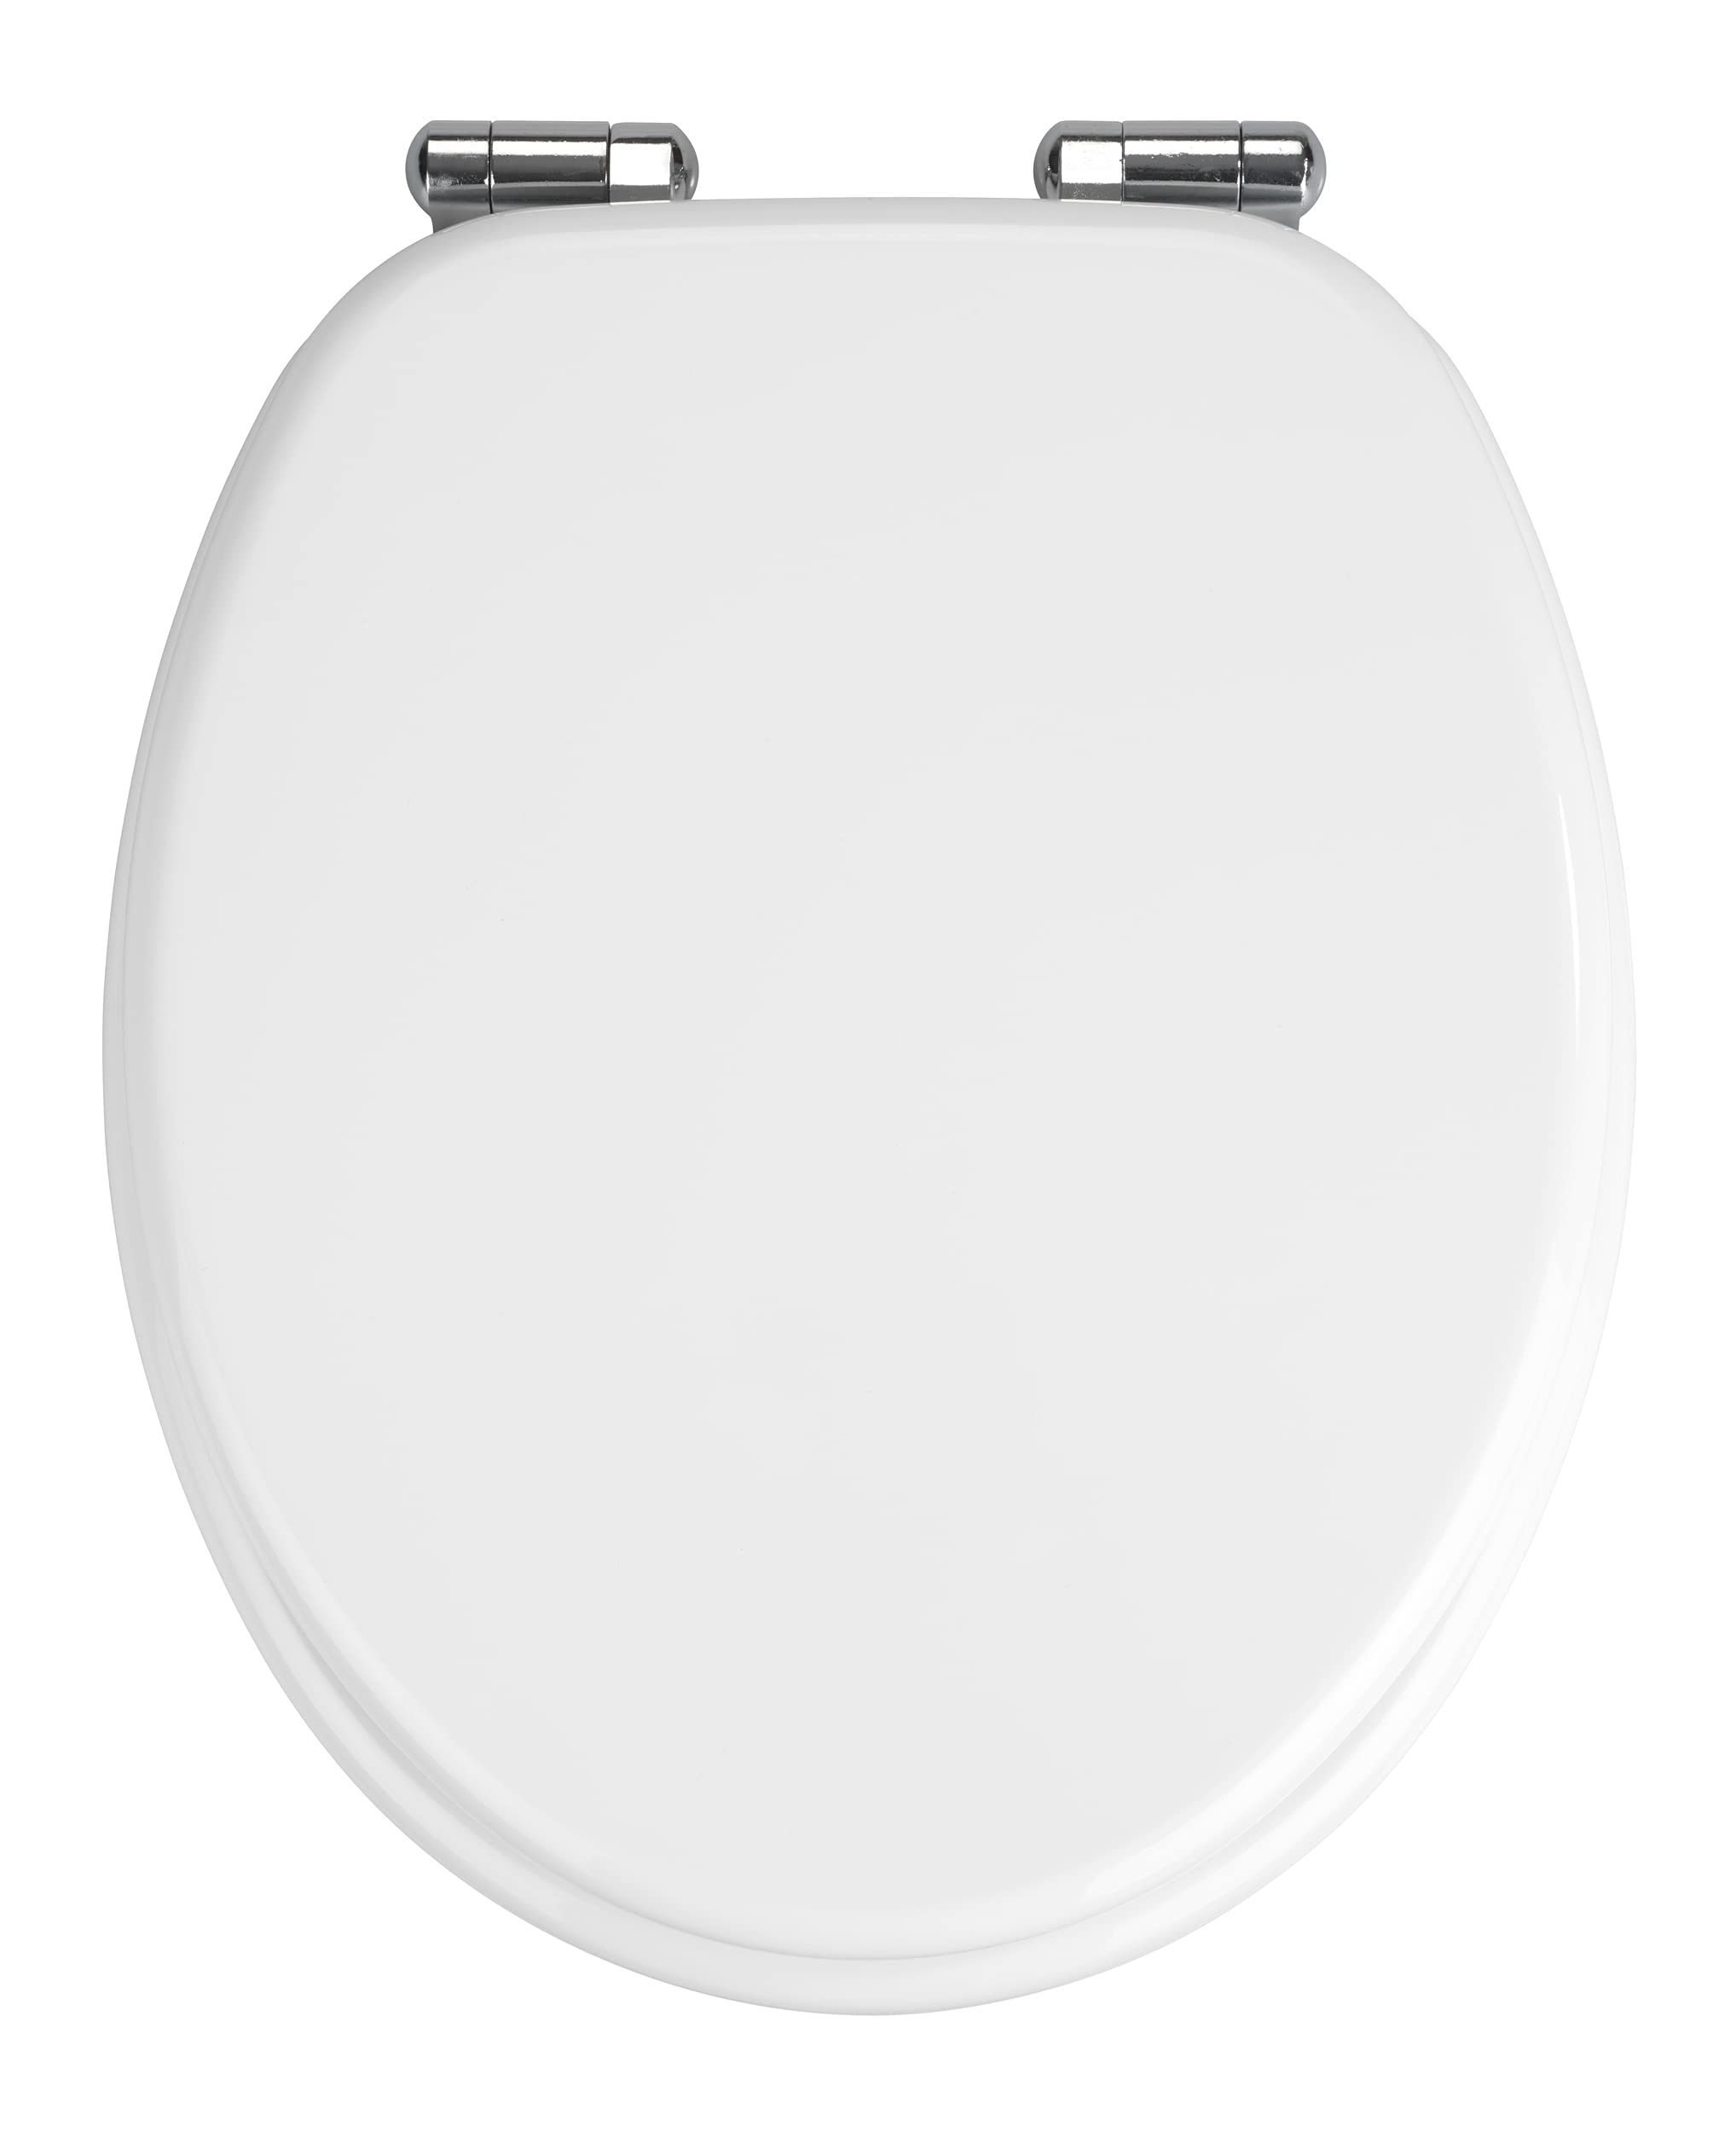 WENKO WC-Sitz Urbino, Toilettensitz mit Easy-Close Absenkautomatik, WC-Deckel für sanftes Deckelschließen mit rostfreier Hygienebefestigung, aus MDF, FSC® zertifiziert, 36 x 42,5 cm, Weiß